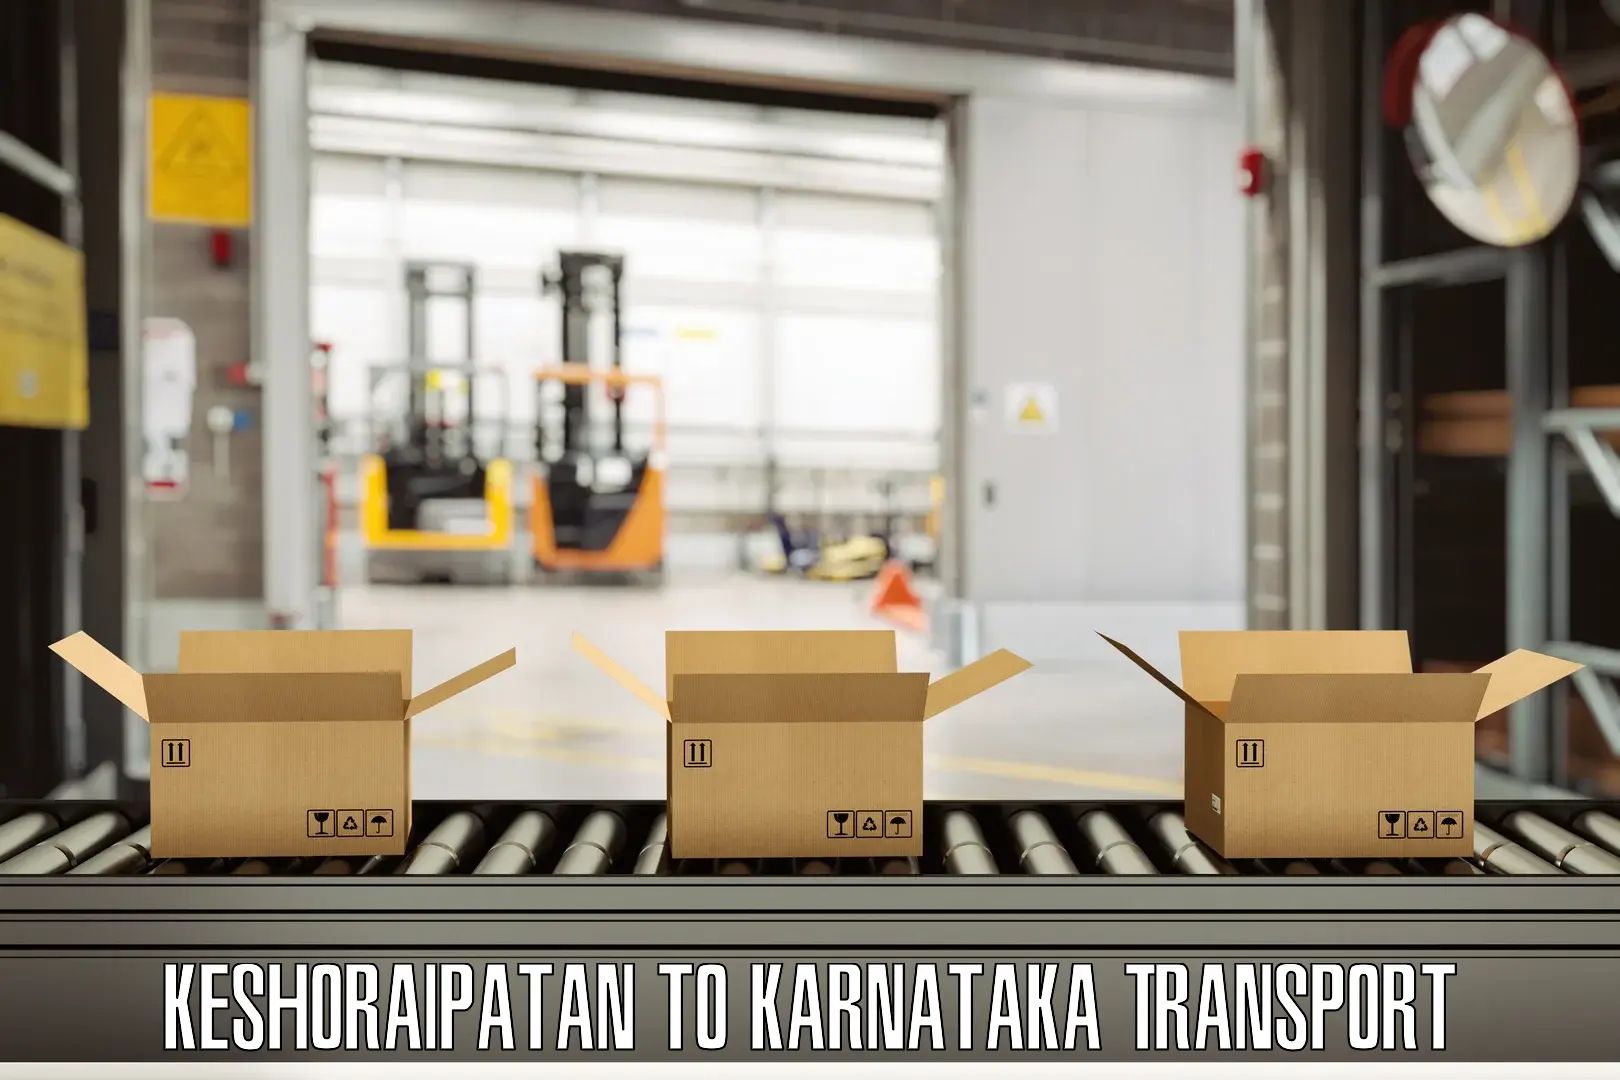 Lorry transport service Keshoraipatan to Karnataka